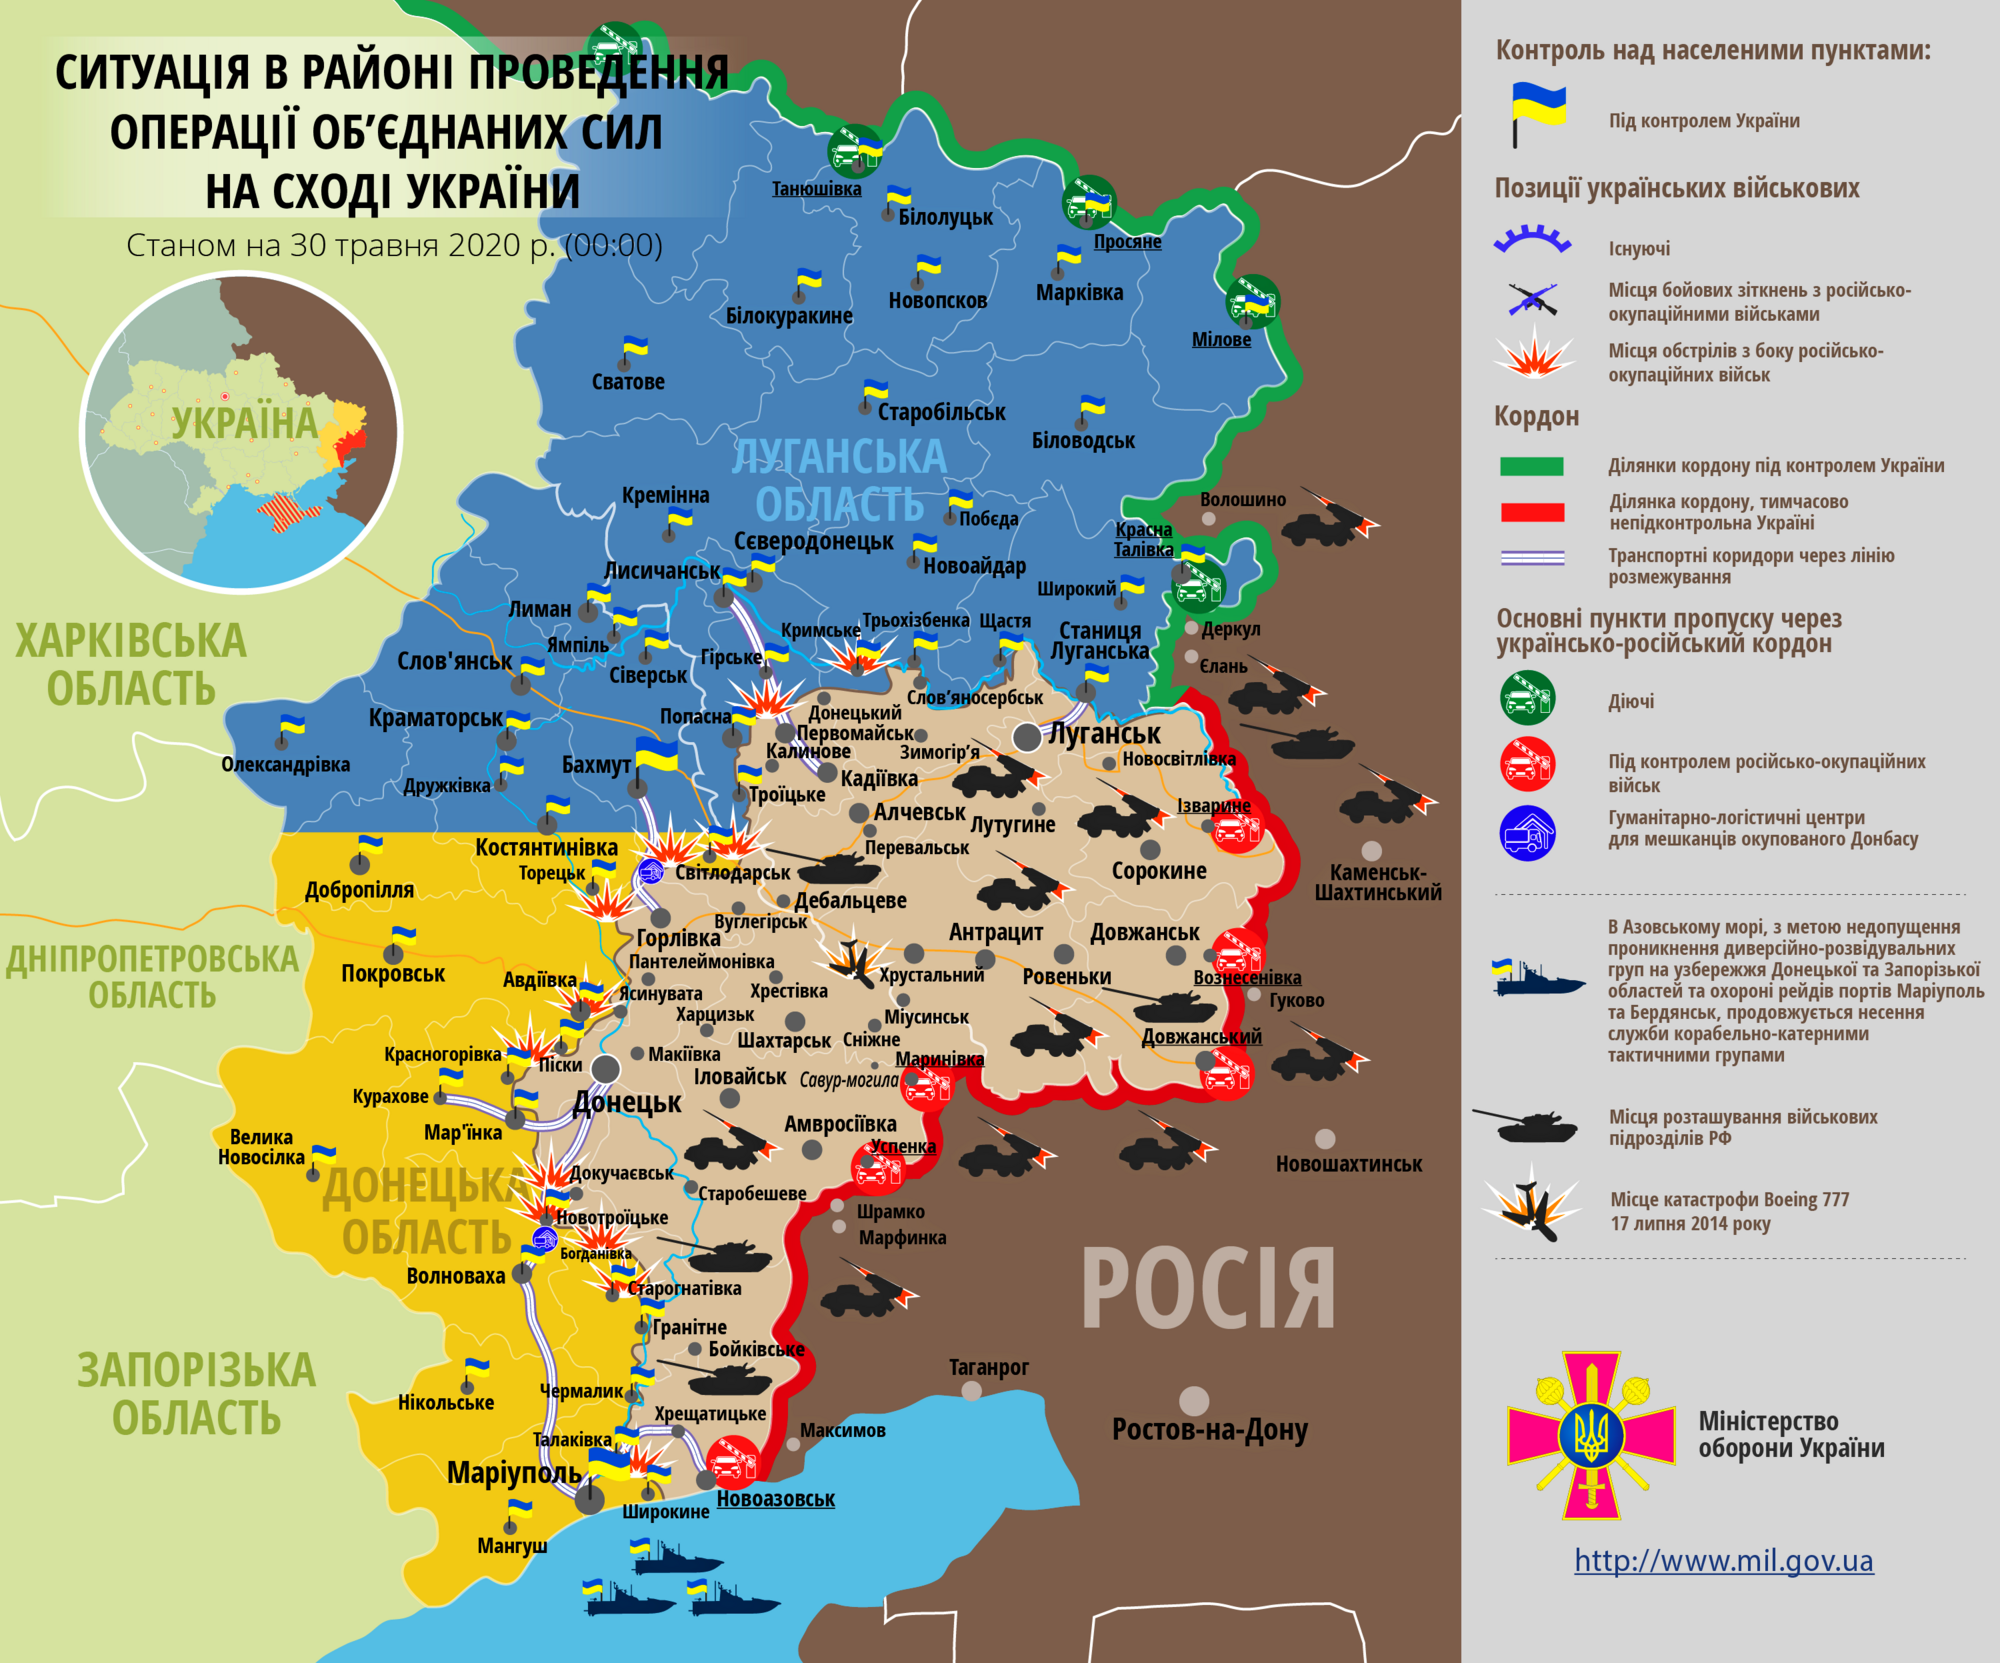 Ситуация в зоне проведения ООС на Донбассе 30 мая